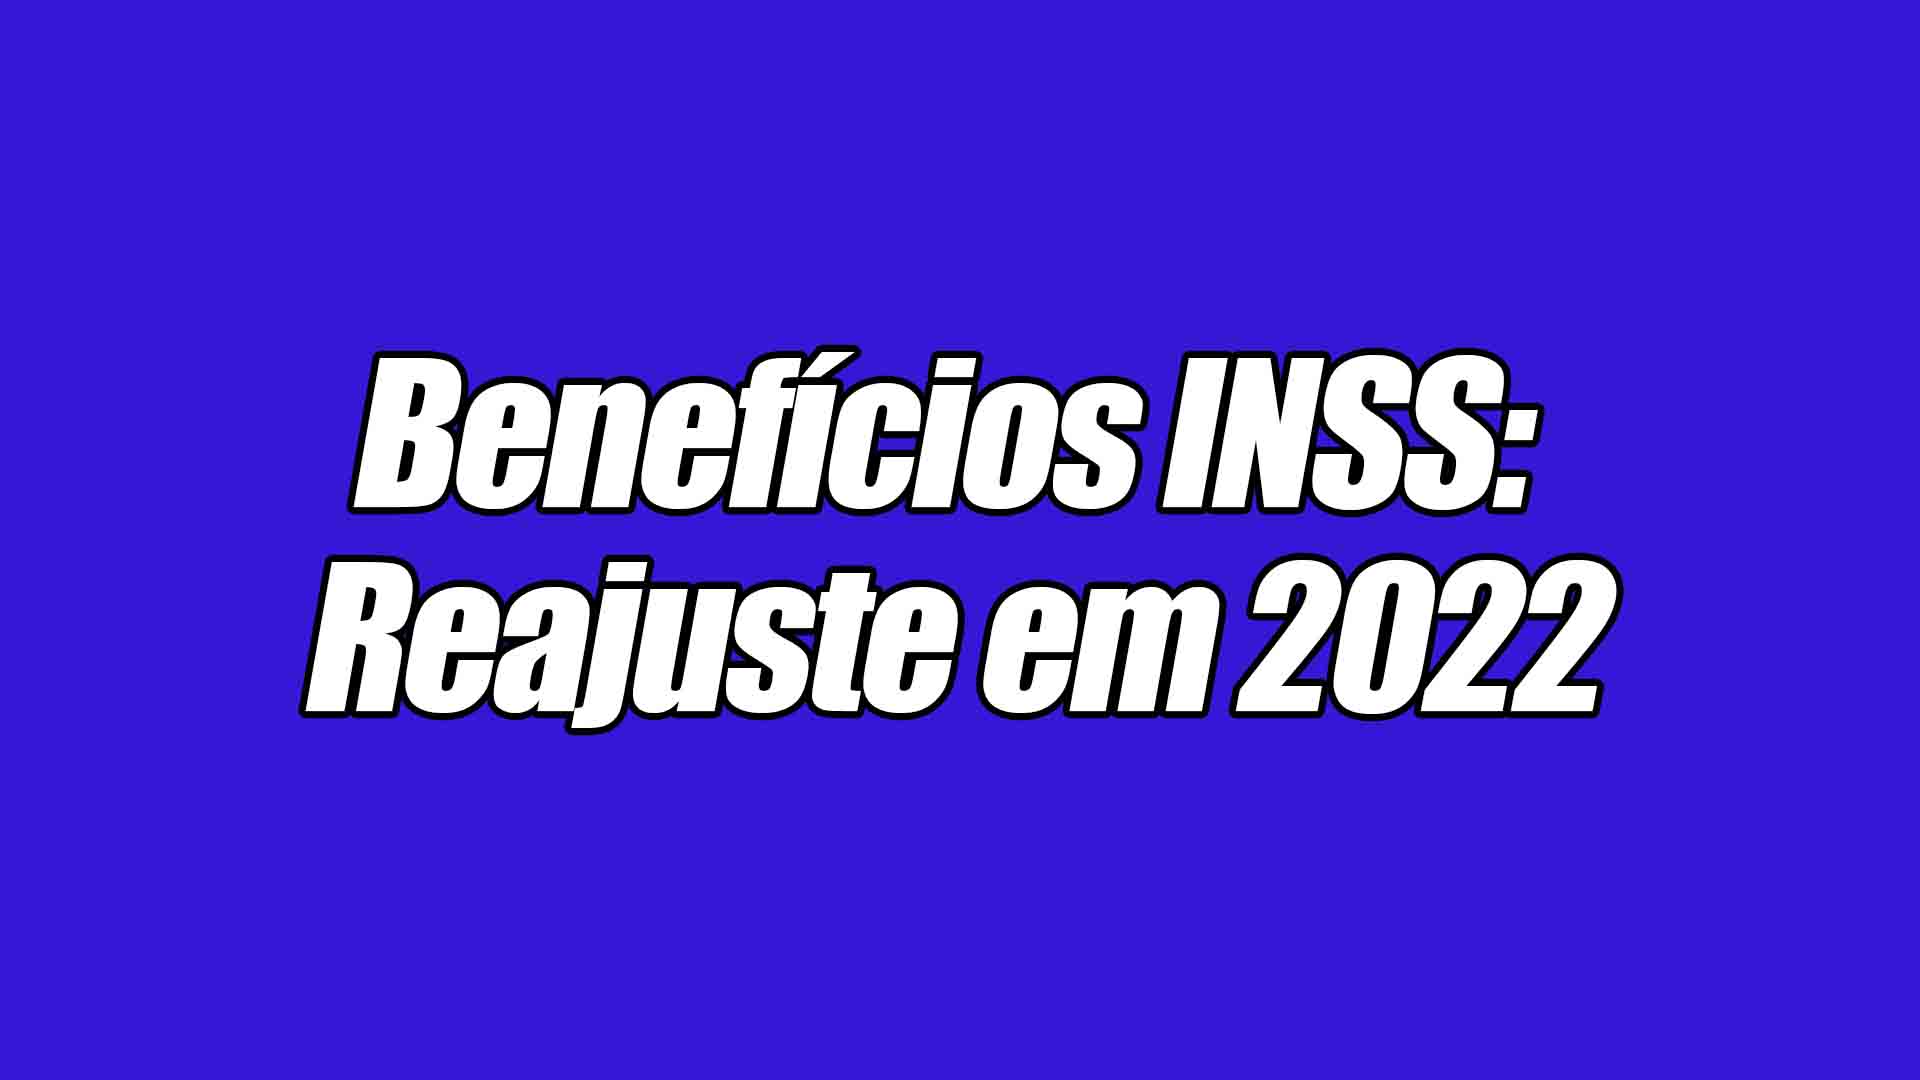 O INSS tem cerca de 36 milhões de beneficiários que recebem seguros, como: aposentadorias, pensões, auxílios. Devido ao reajuste do salário mínimo, os benefícios também terão um aumento nos valores em 2022.